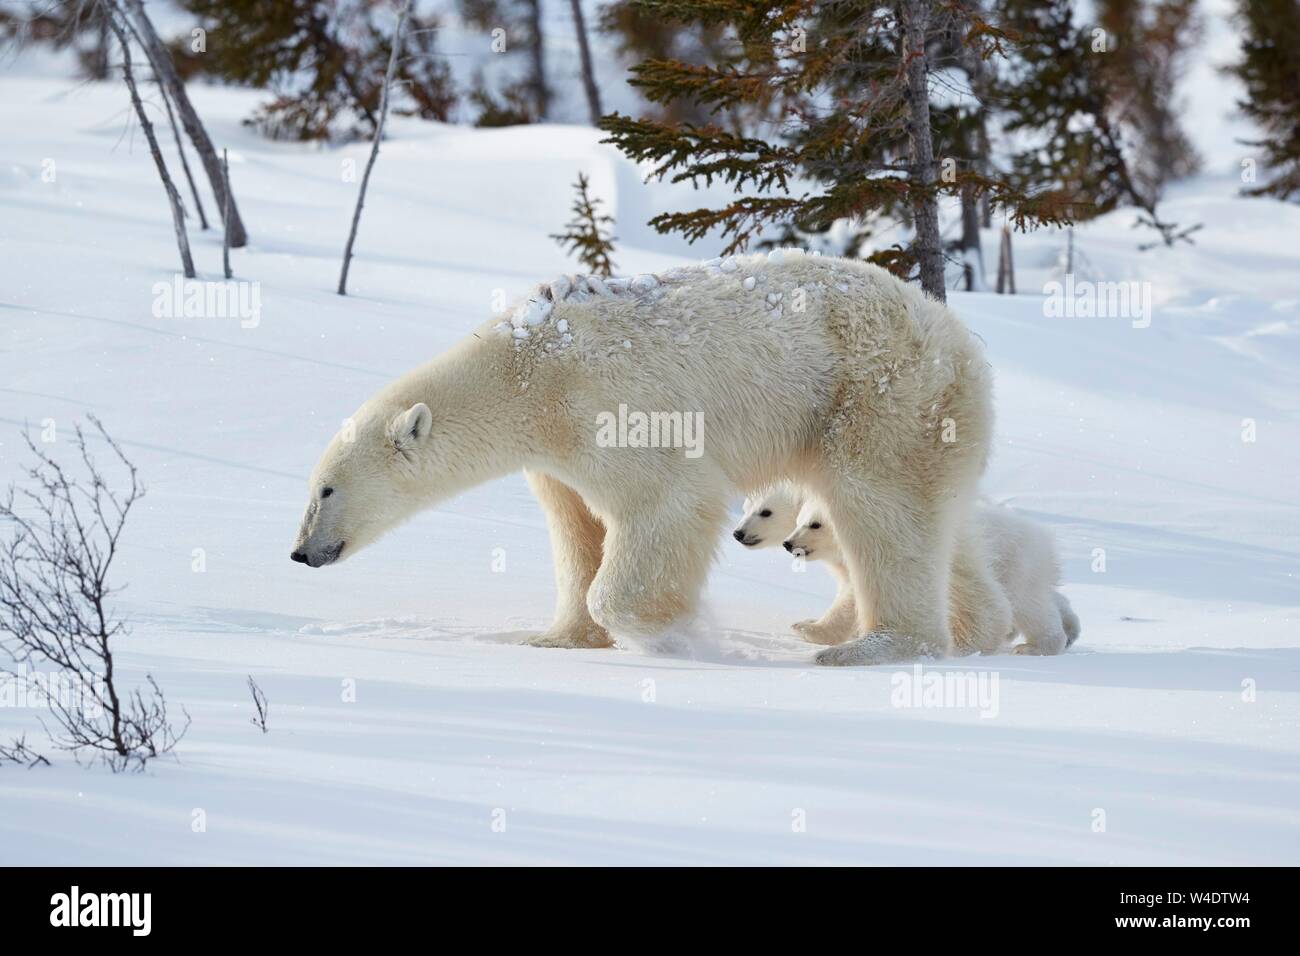 L'ours polaire (Ursus maritimus), mère de deux des animaux nouveau-nés en cours d'exécution dans la neige, Parc National de Wapusk, Manitoba, Canada Banque D'Images